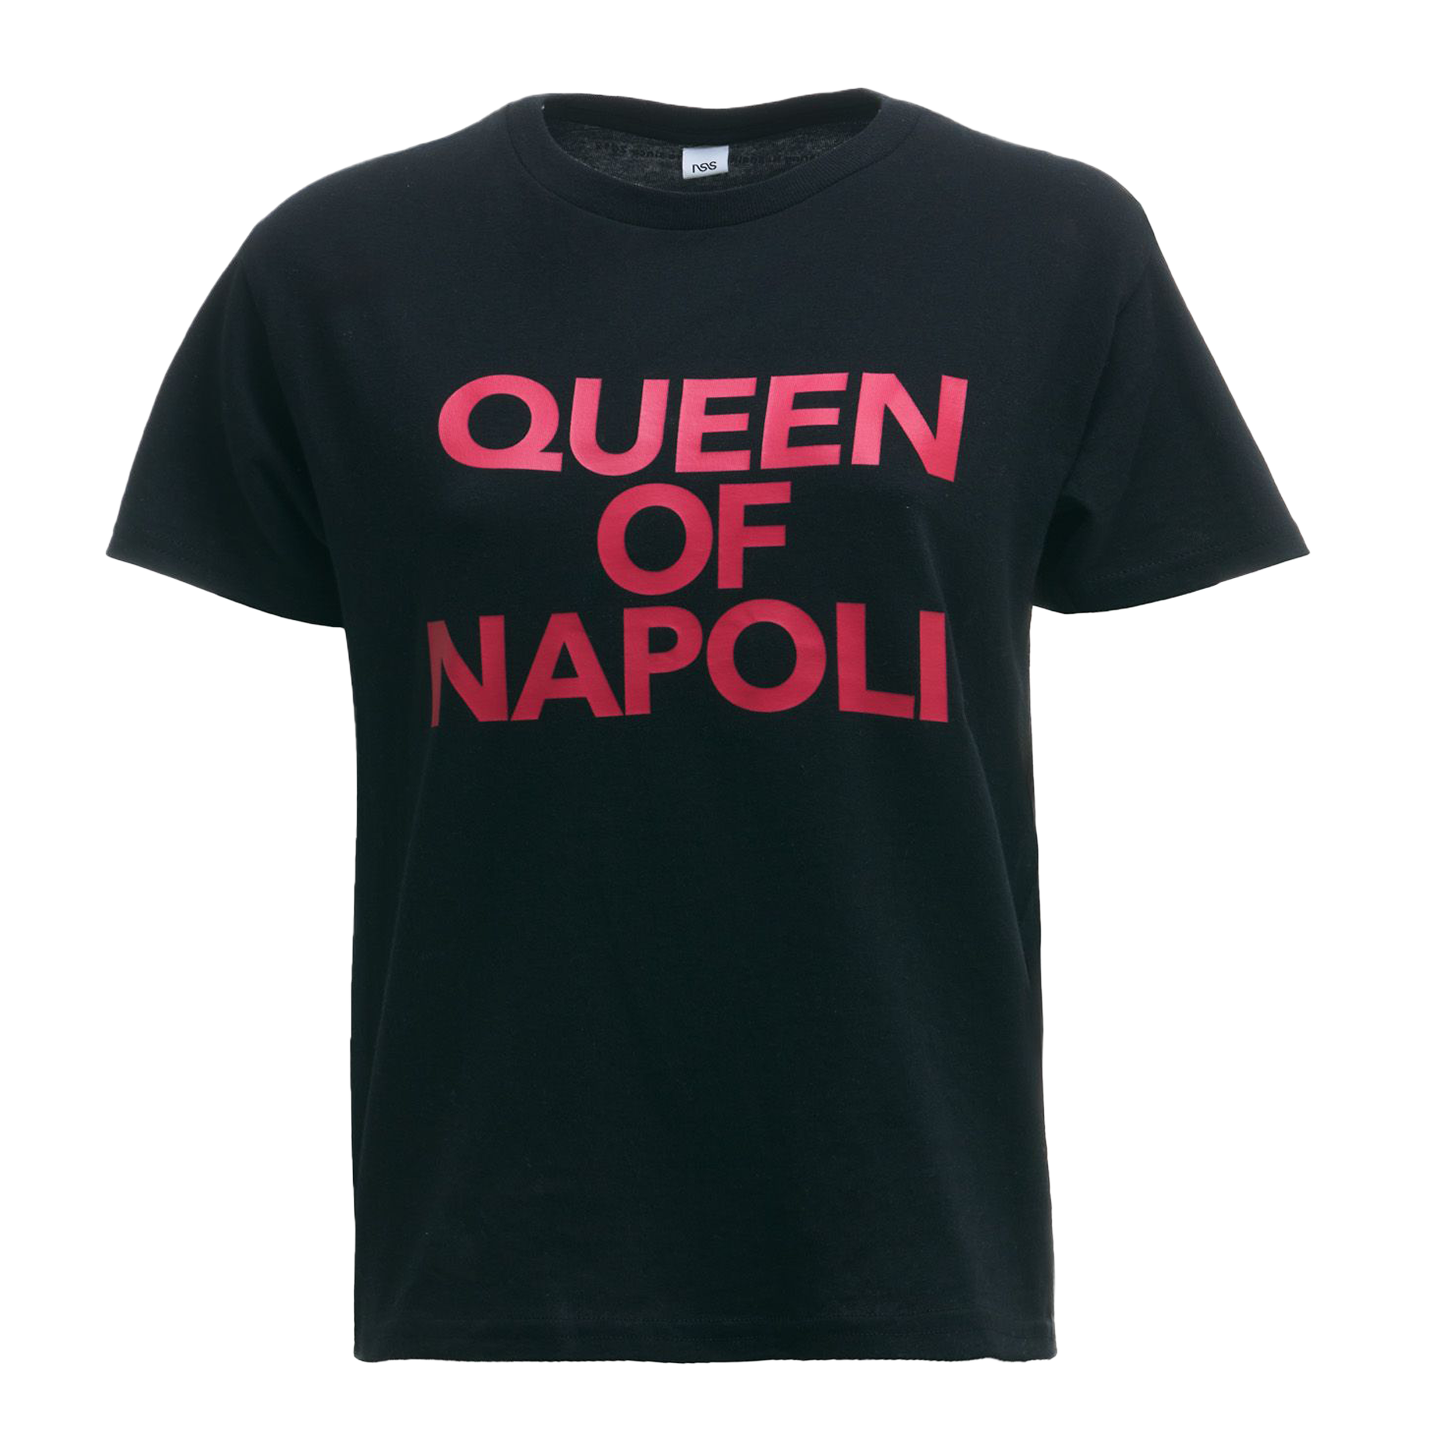 Queen Napoli Tee Black